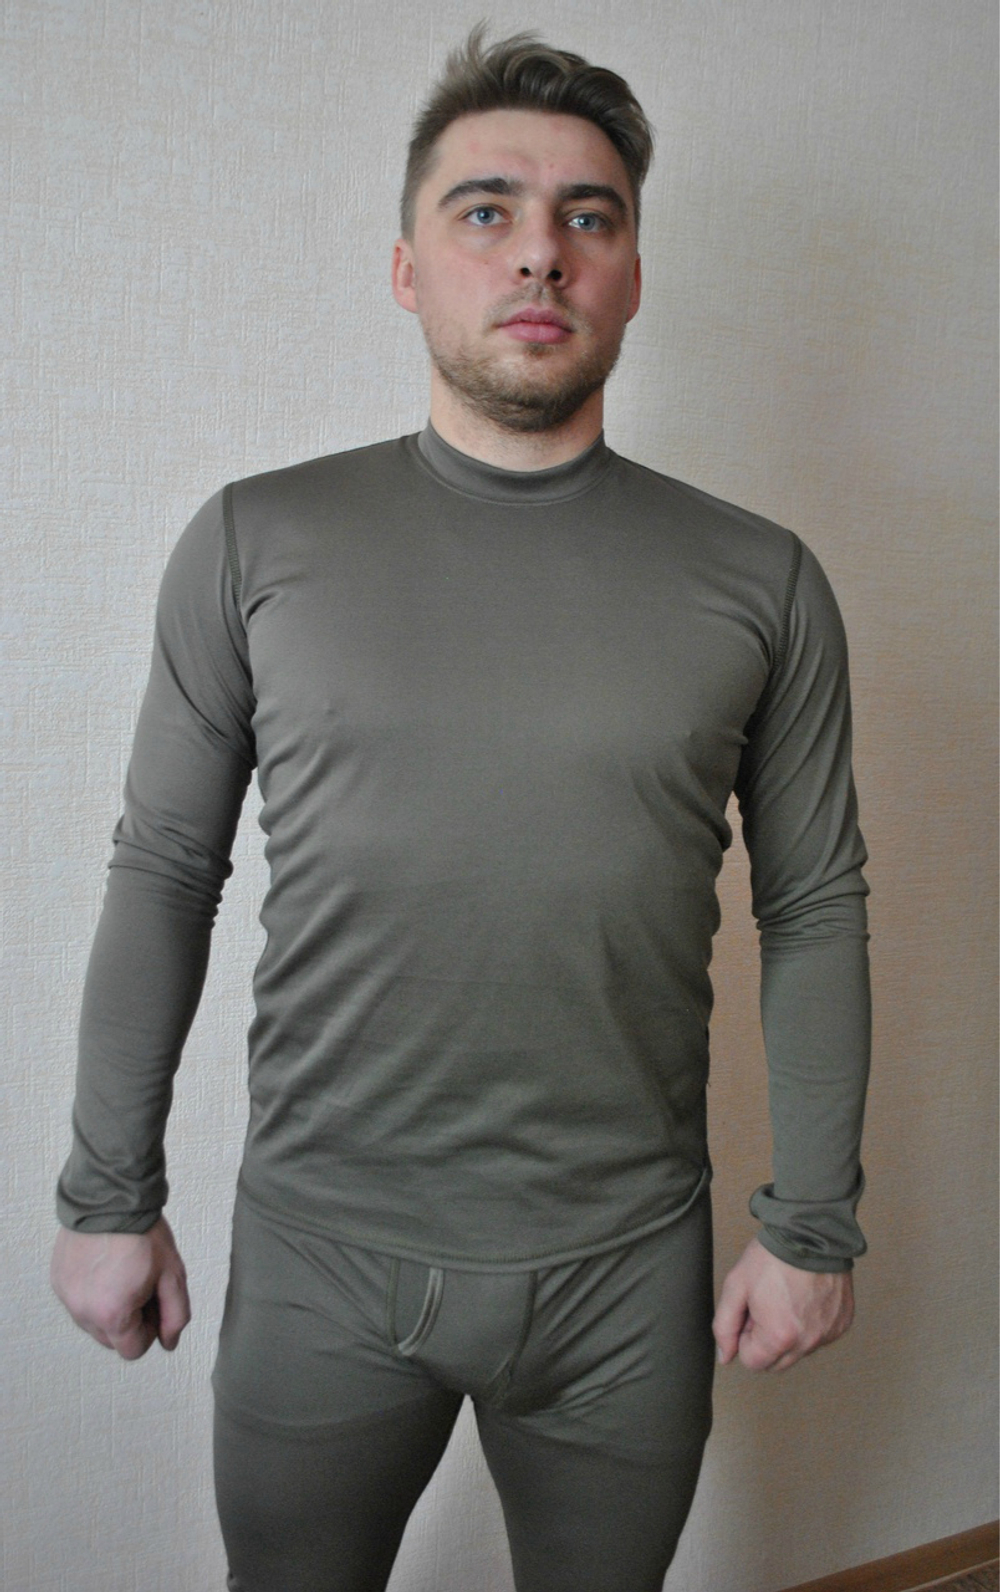 Зимний комплект одежды ВКПО (ВКБО) оригинал БТК-групп